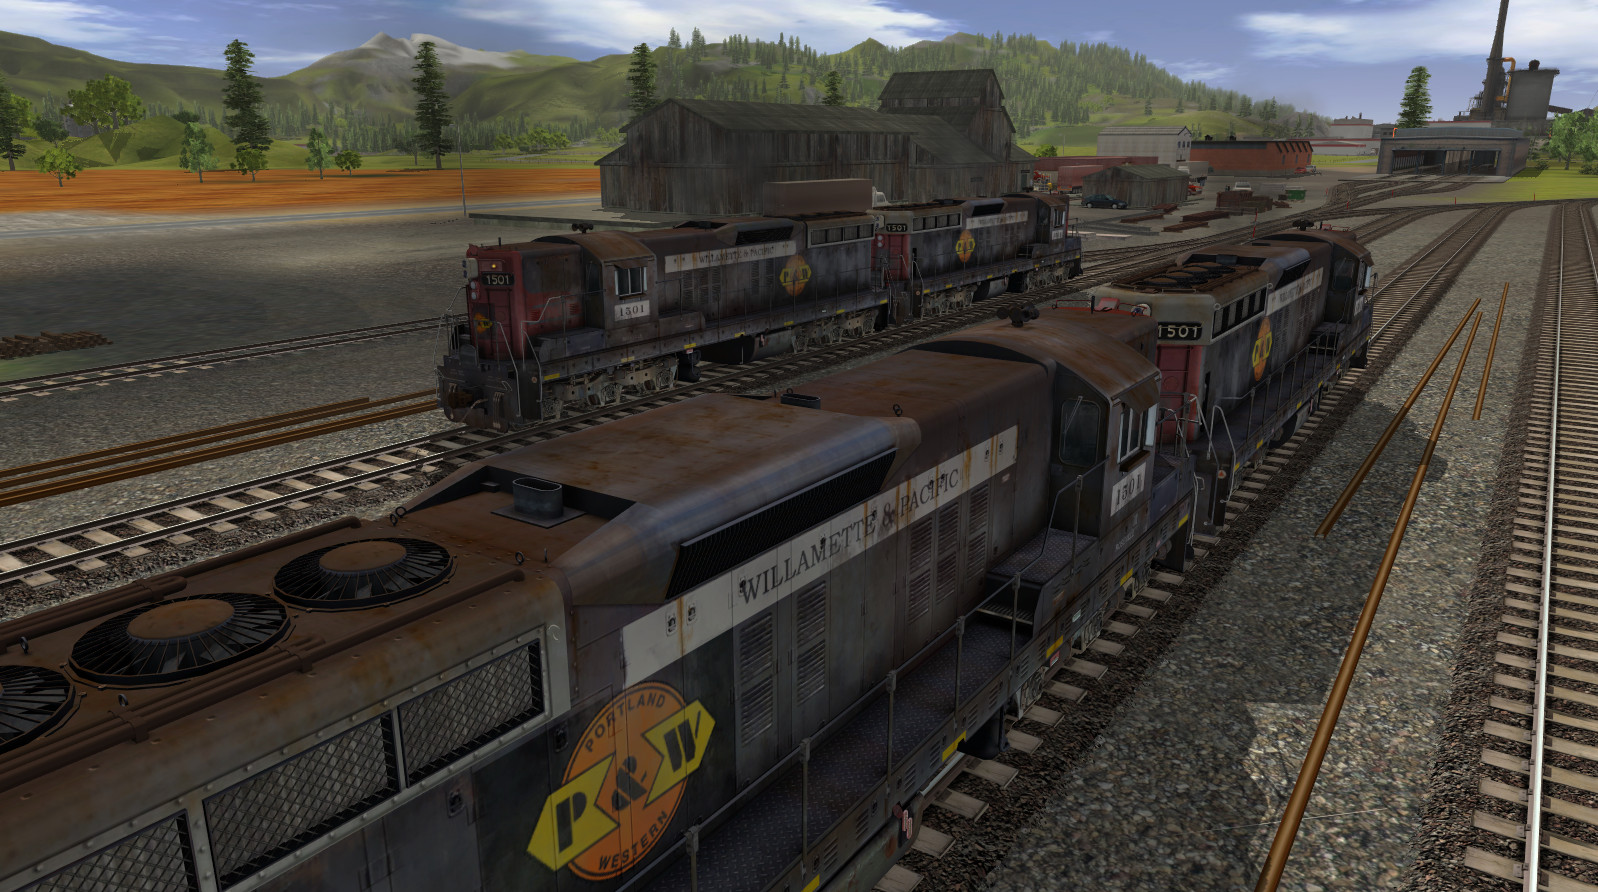 Сд играть. Игра Trainz Railroad Simulator 2019. Трейнз 12 моды. Диски с играми на ПК поезда Траинс 2019. Все машины в трейнз симулятор 2019.